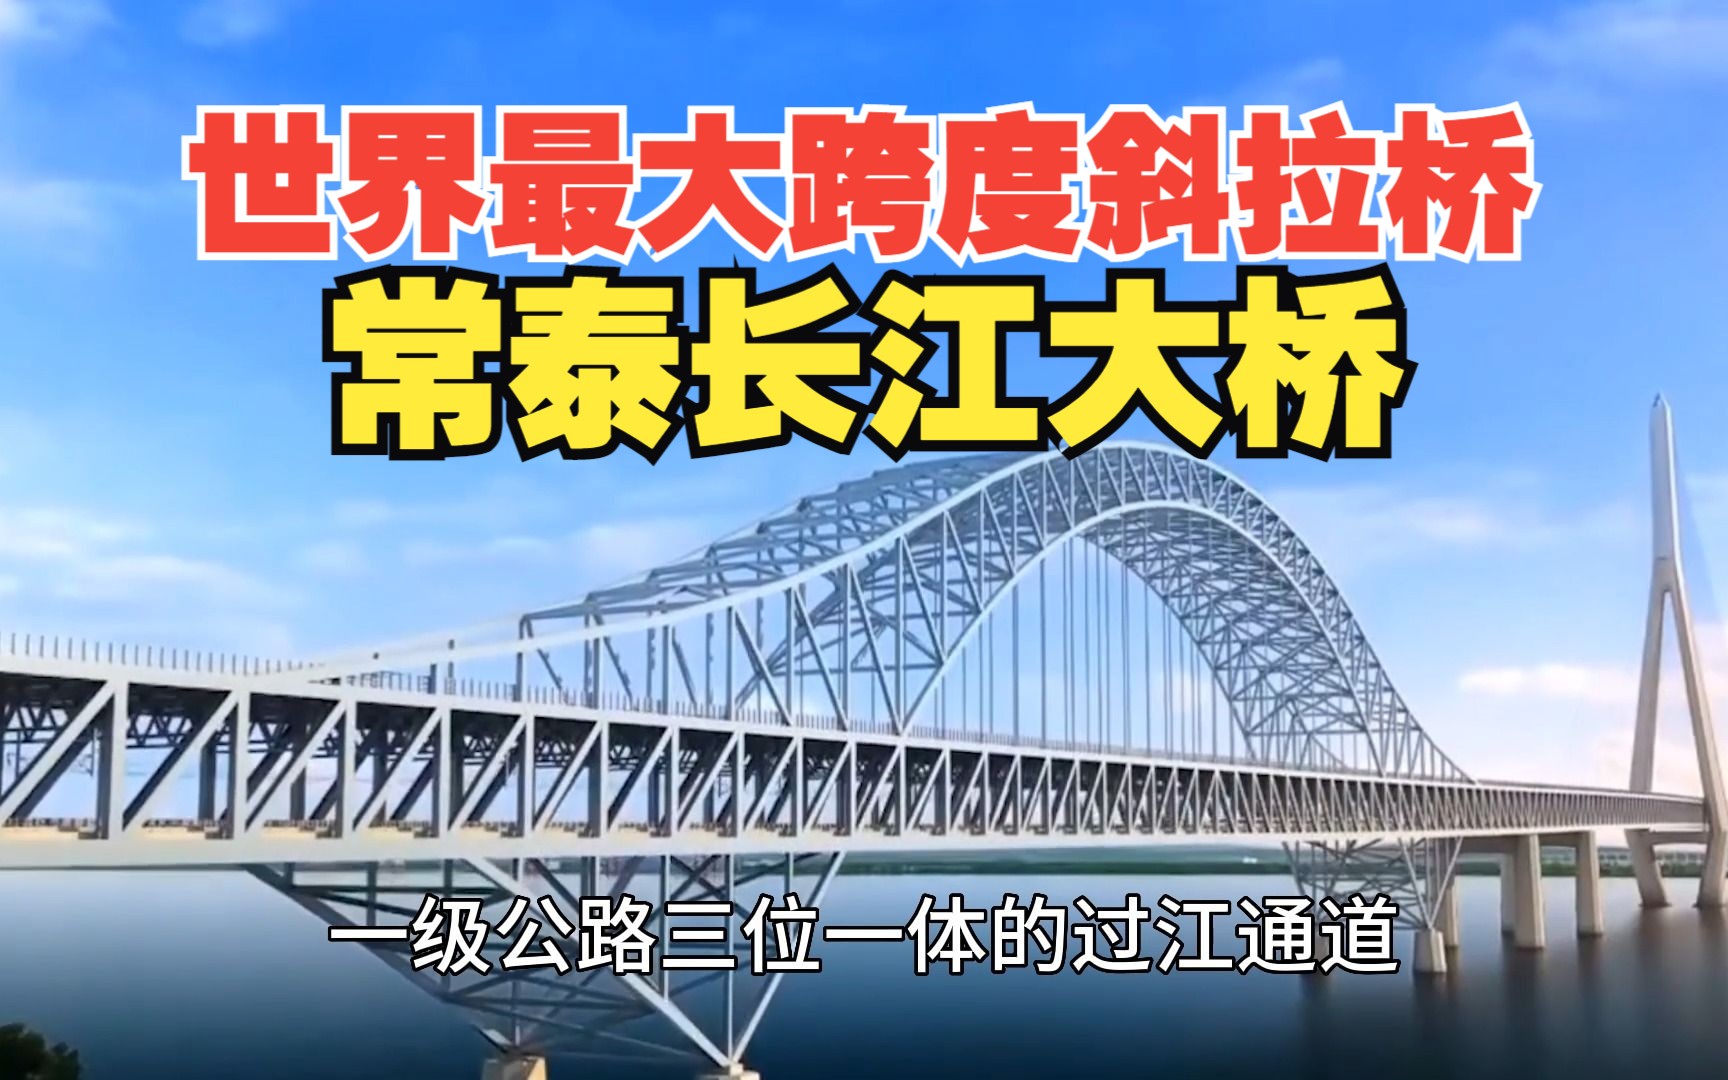 世界最大跨度斜拉桥,常泰长江大桥